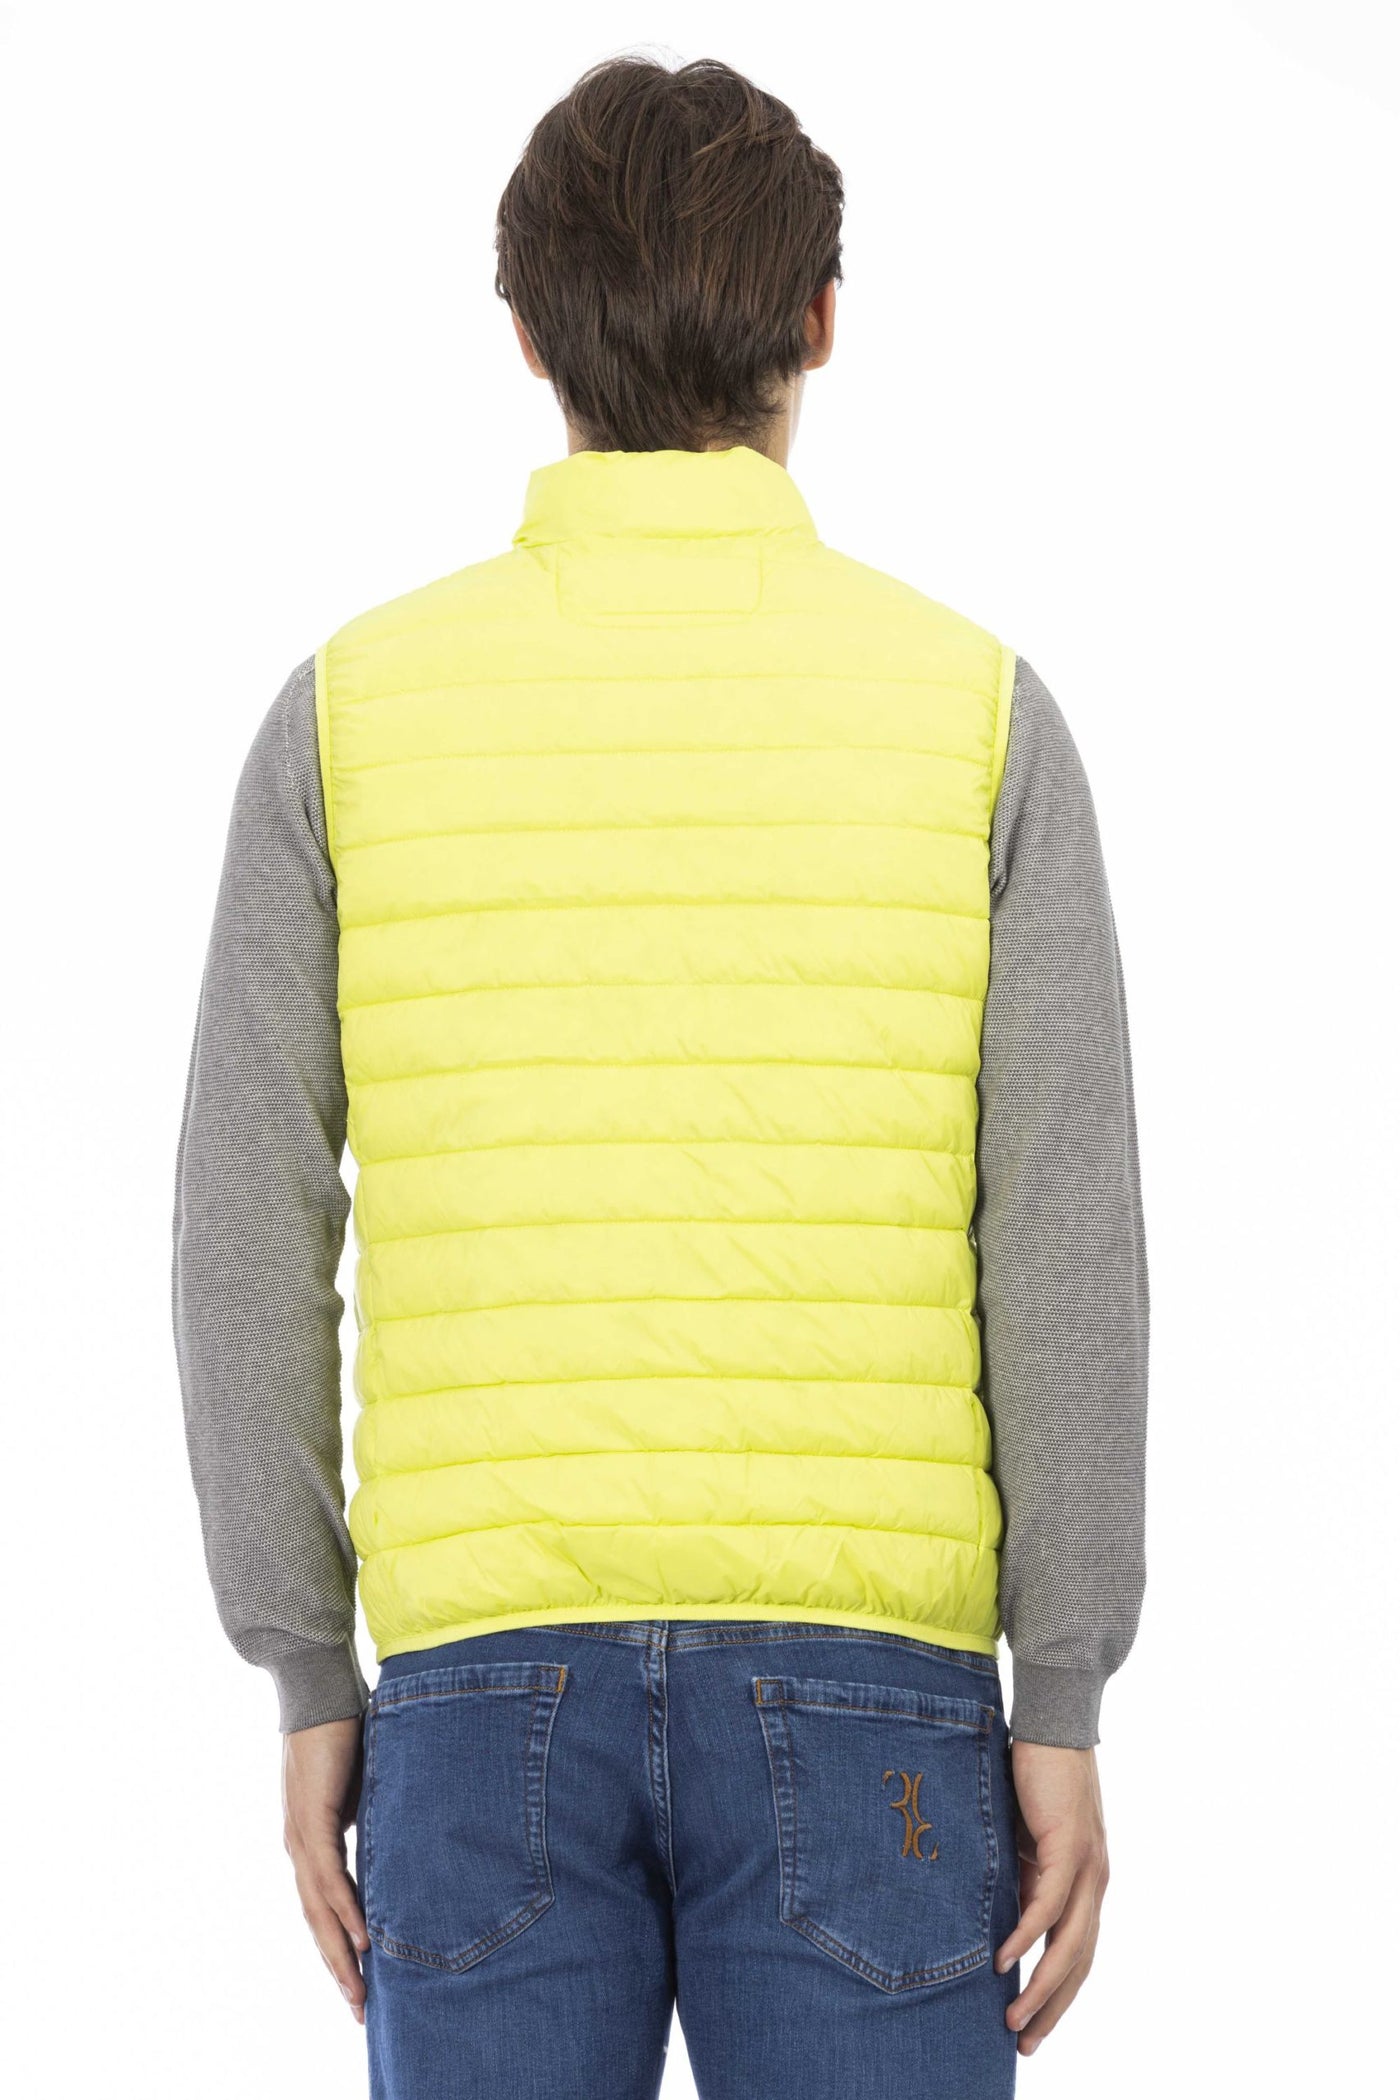 Ciesse Outdoor Yellow Jacket